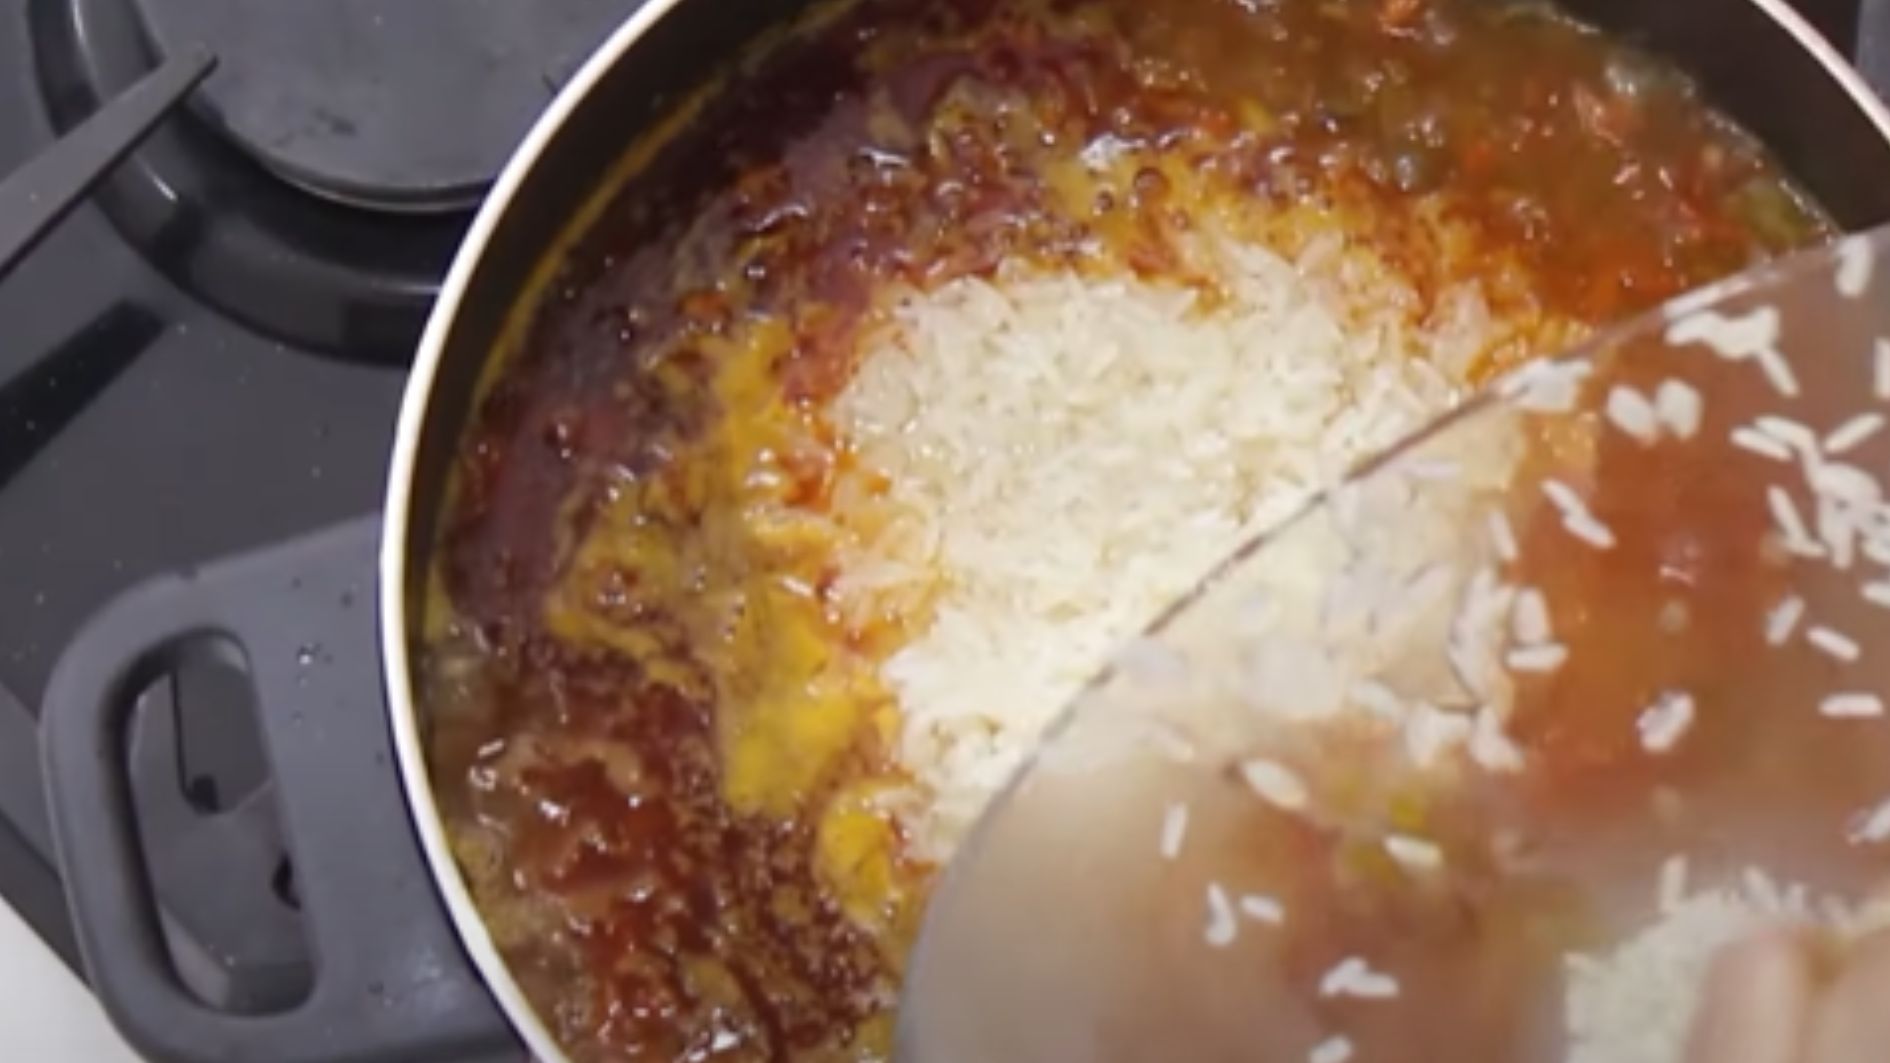 pour rice into pot